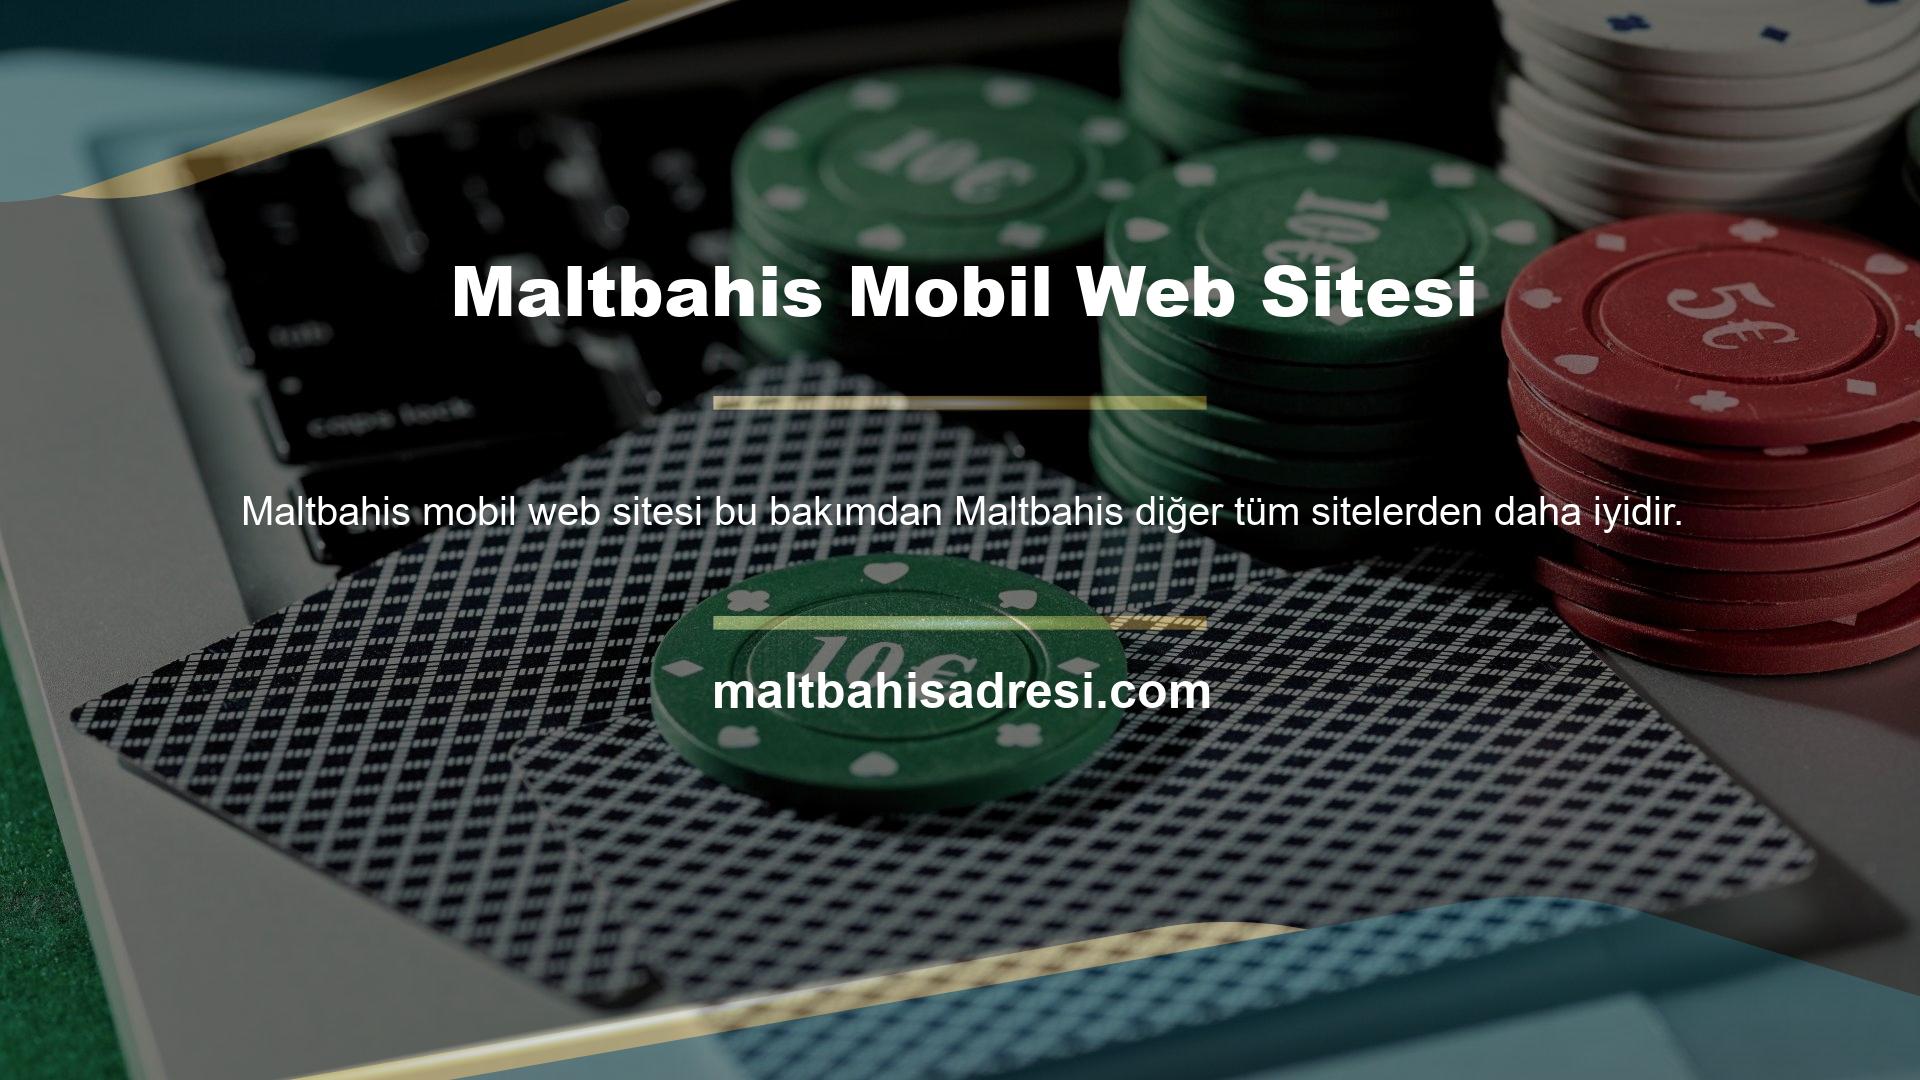 Mobil bahis sitesi olmasa da Maltbahis mobil versiyonu aktiftir